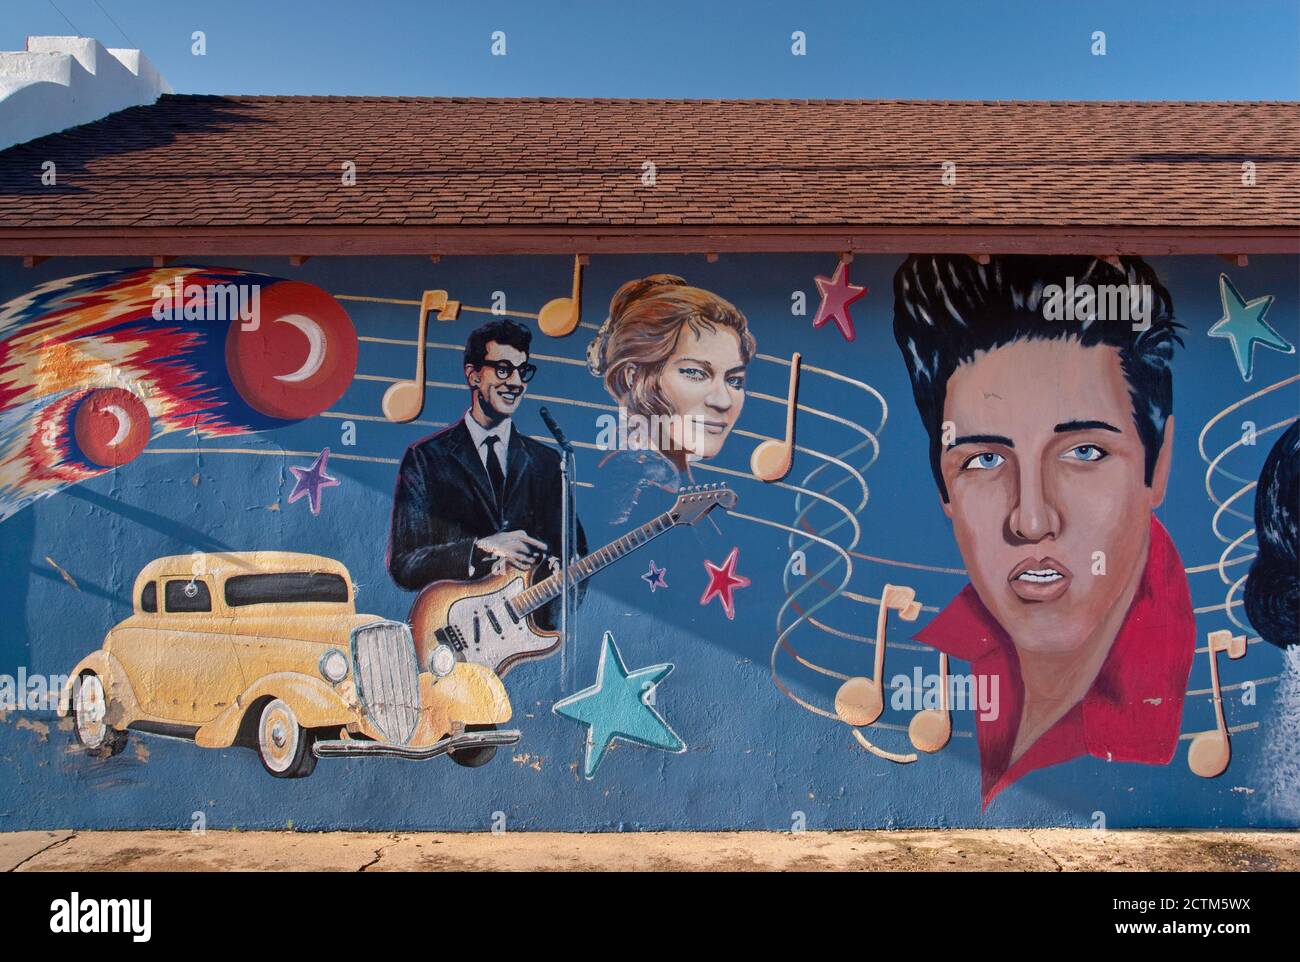 Elvis Presley, Buddy Holly e altre stelle rock' n' roll degli anni '50 nel murale di Clovis nella zona delle Great Plains del New Mexico, USA Foto Stock